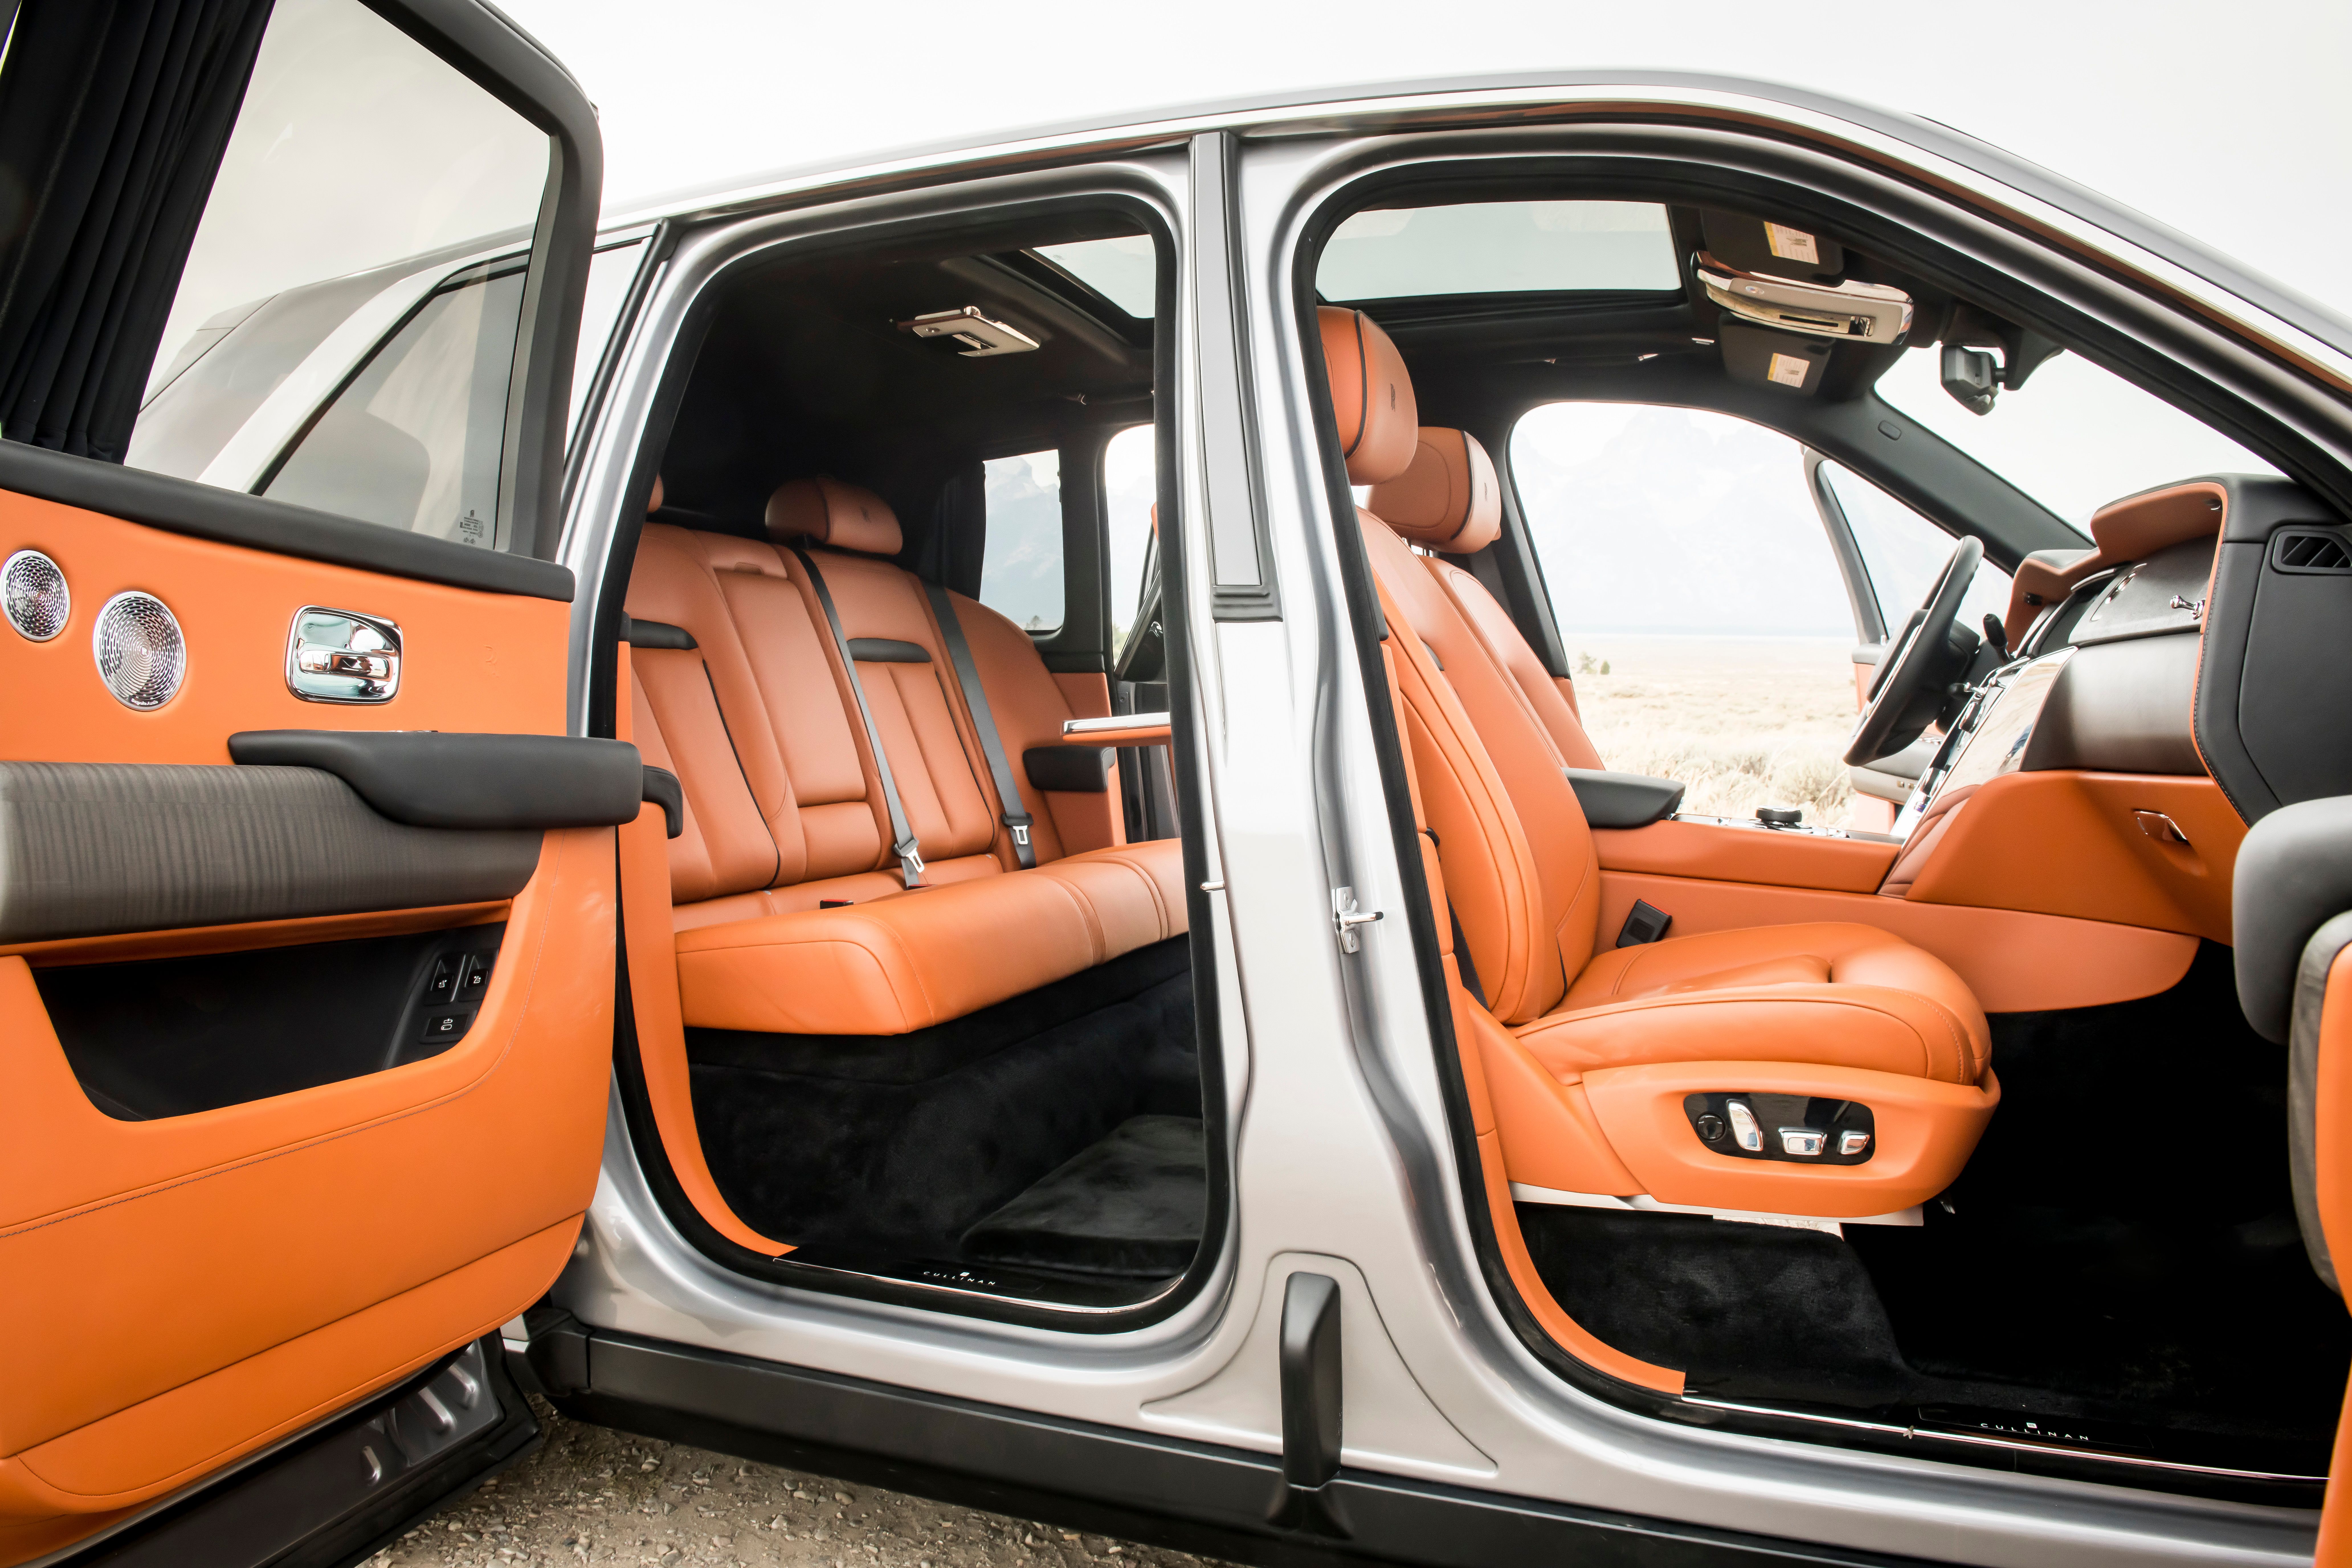 A look inside the Rolls-Royce Cullinan.